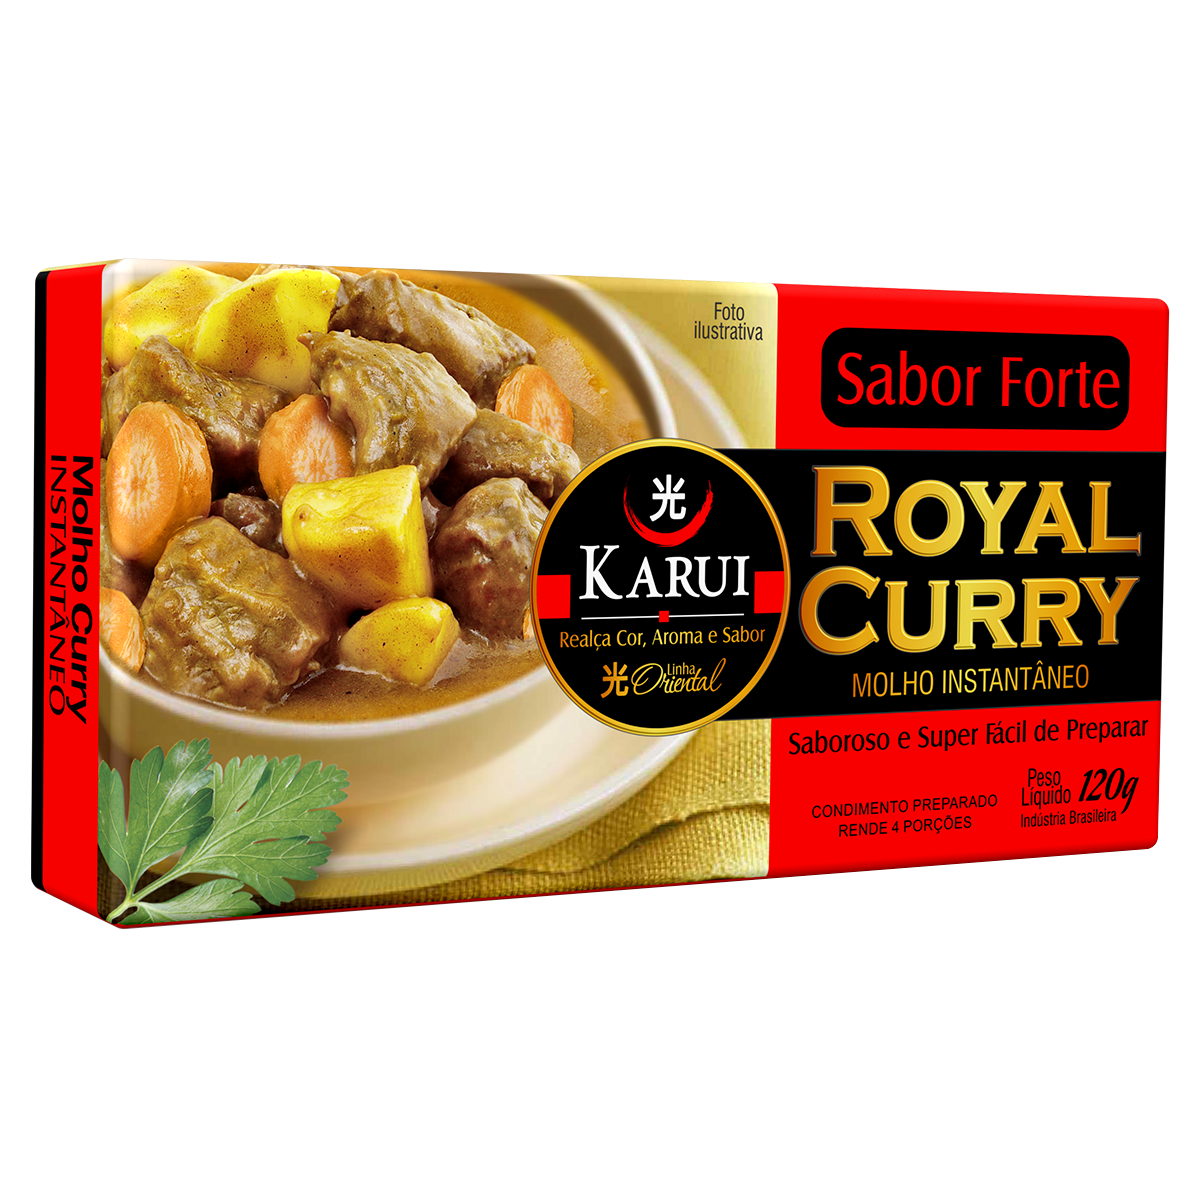 Caldo Royal Curry Forte Karui 120g